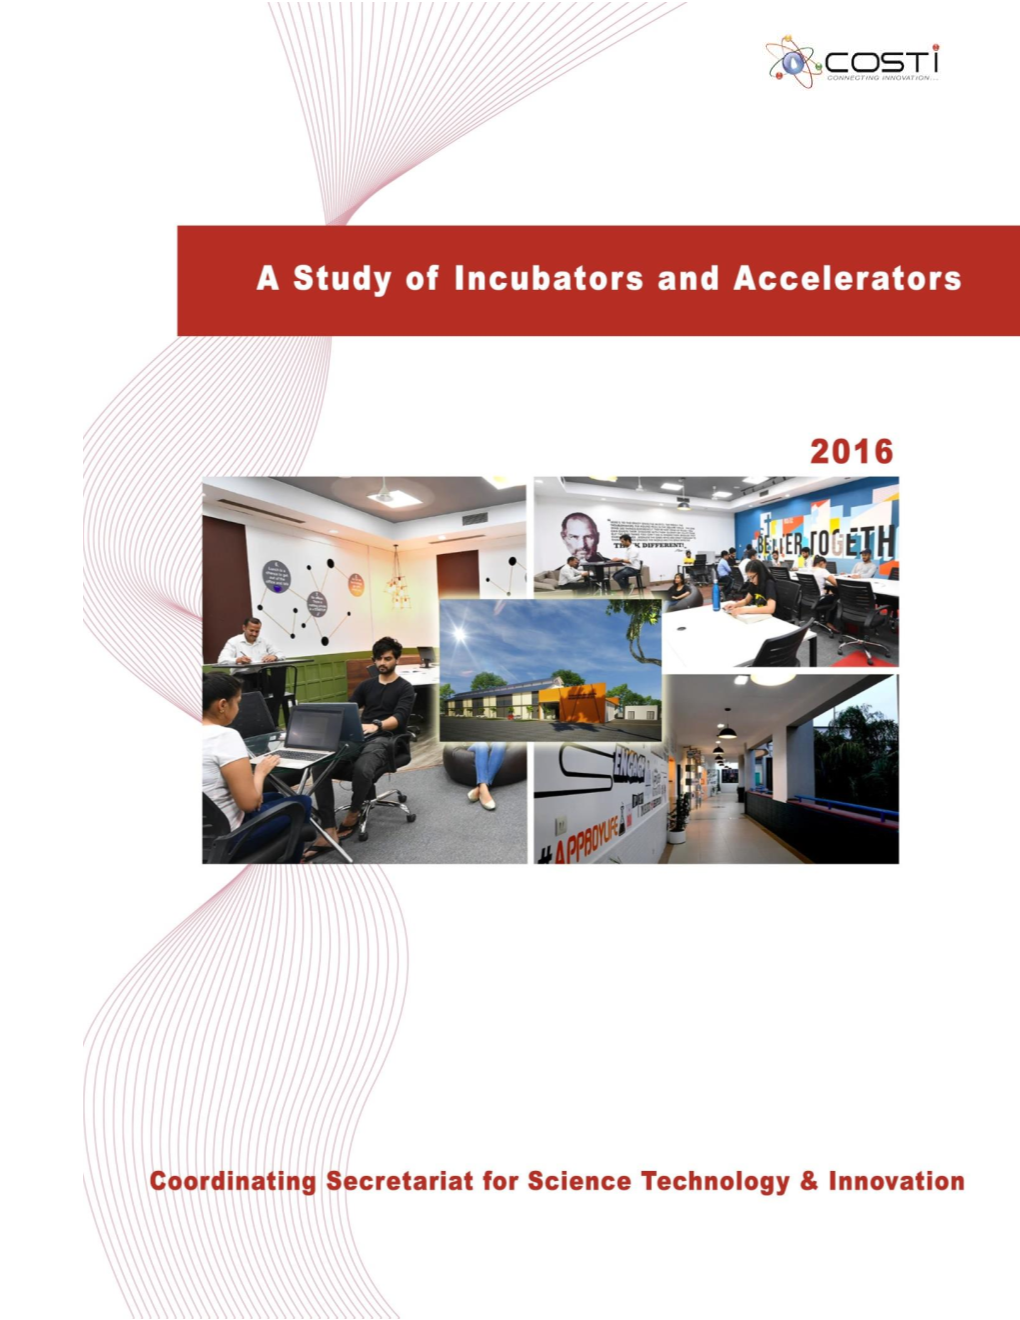 6. Status of Sri Lankan Incubators and Accelerators